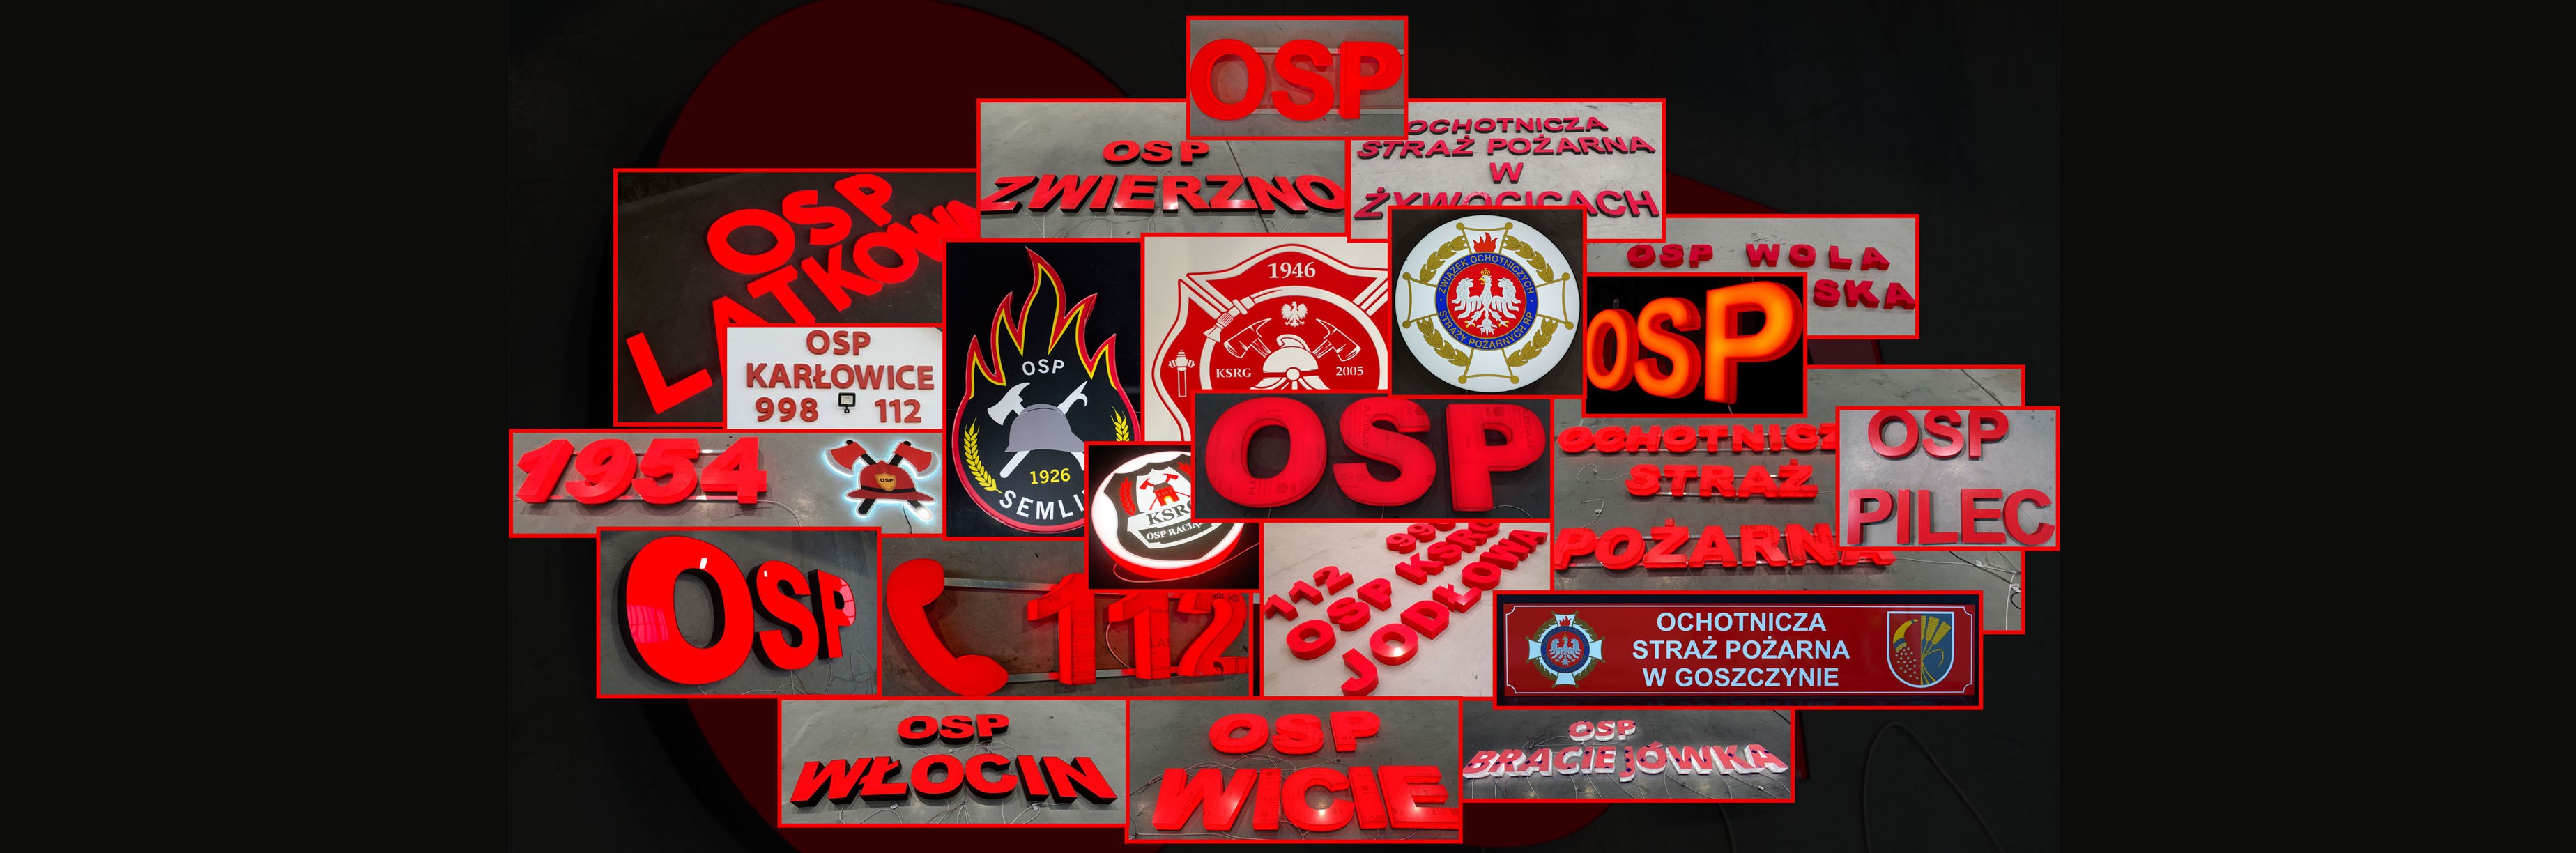 Ochotnicza Straż Pożarna - oznakowanie jednostek OSP - szyld strażacki, baner strażacki, litery blokowe